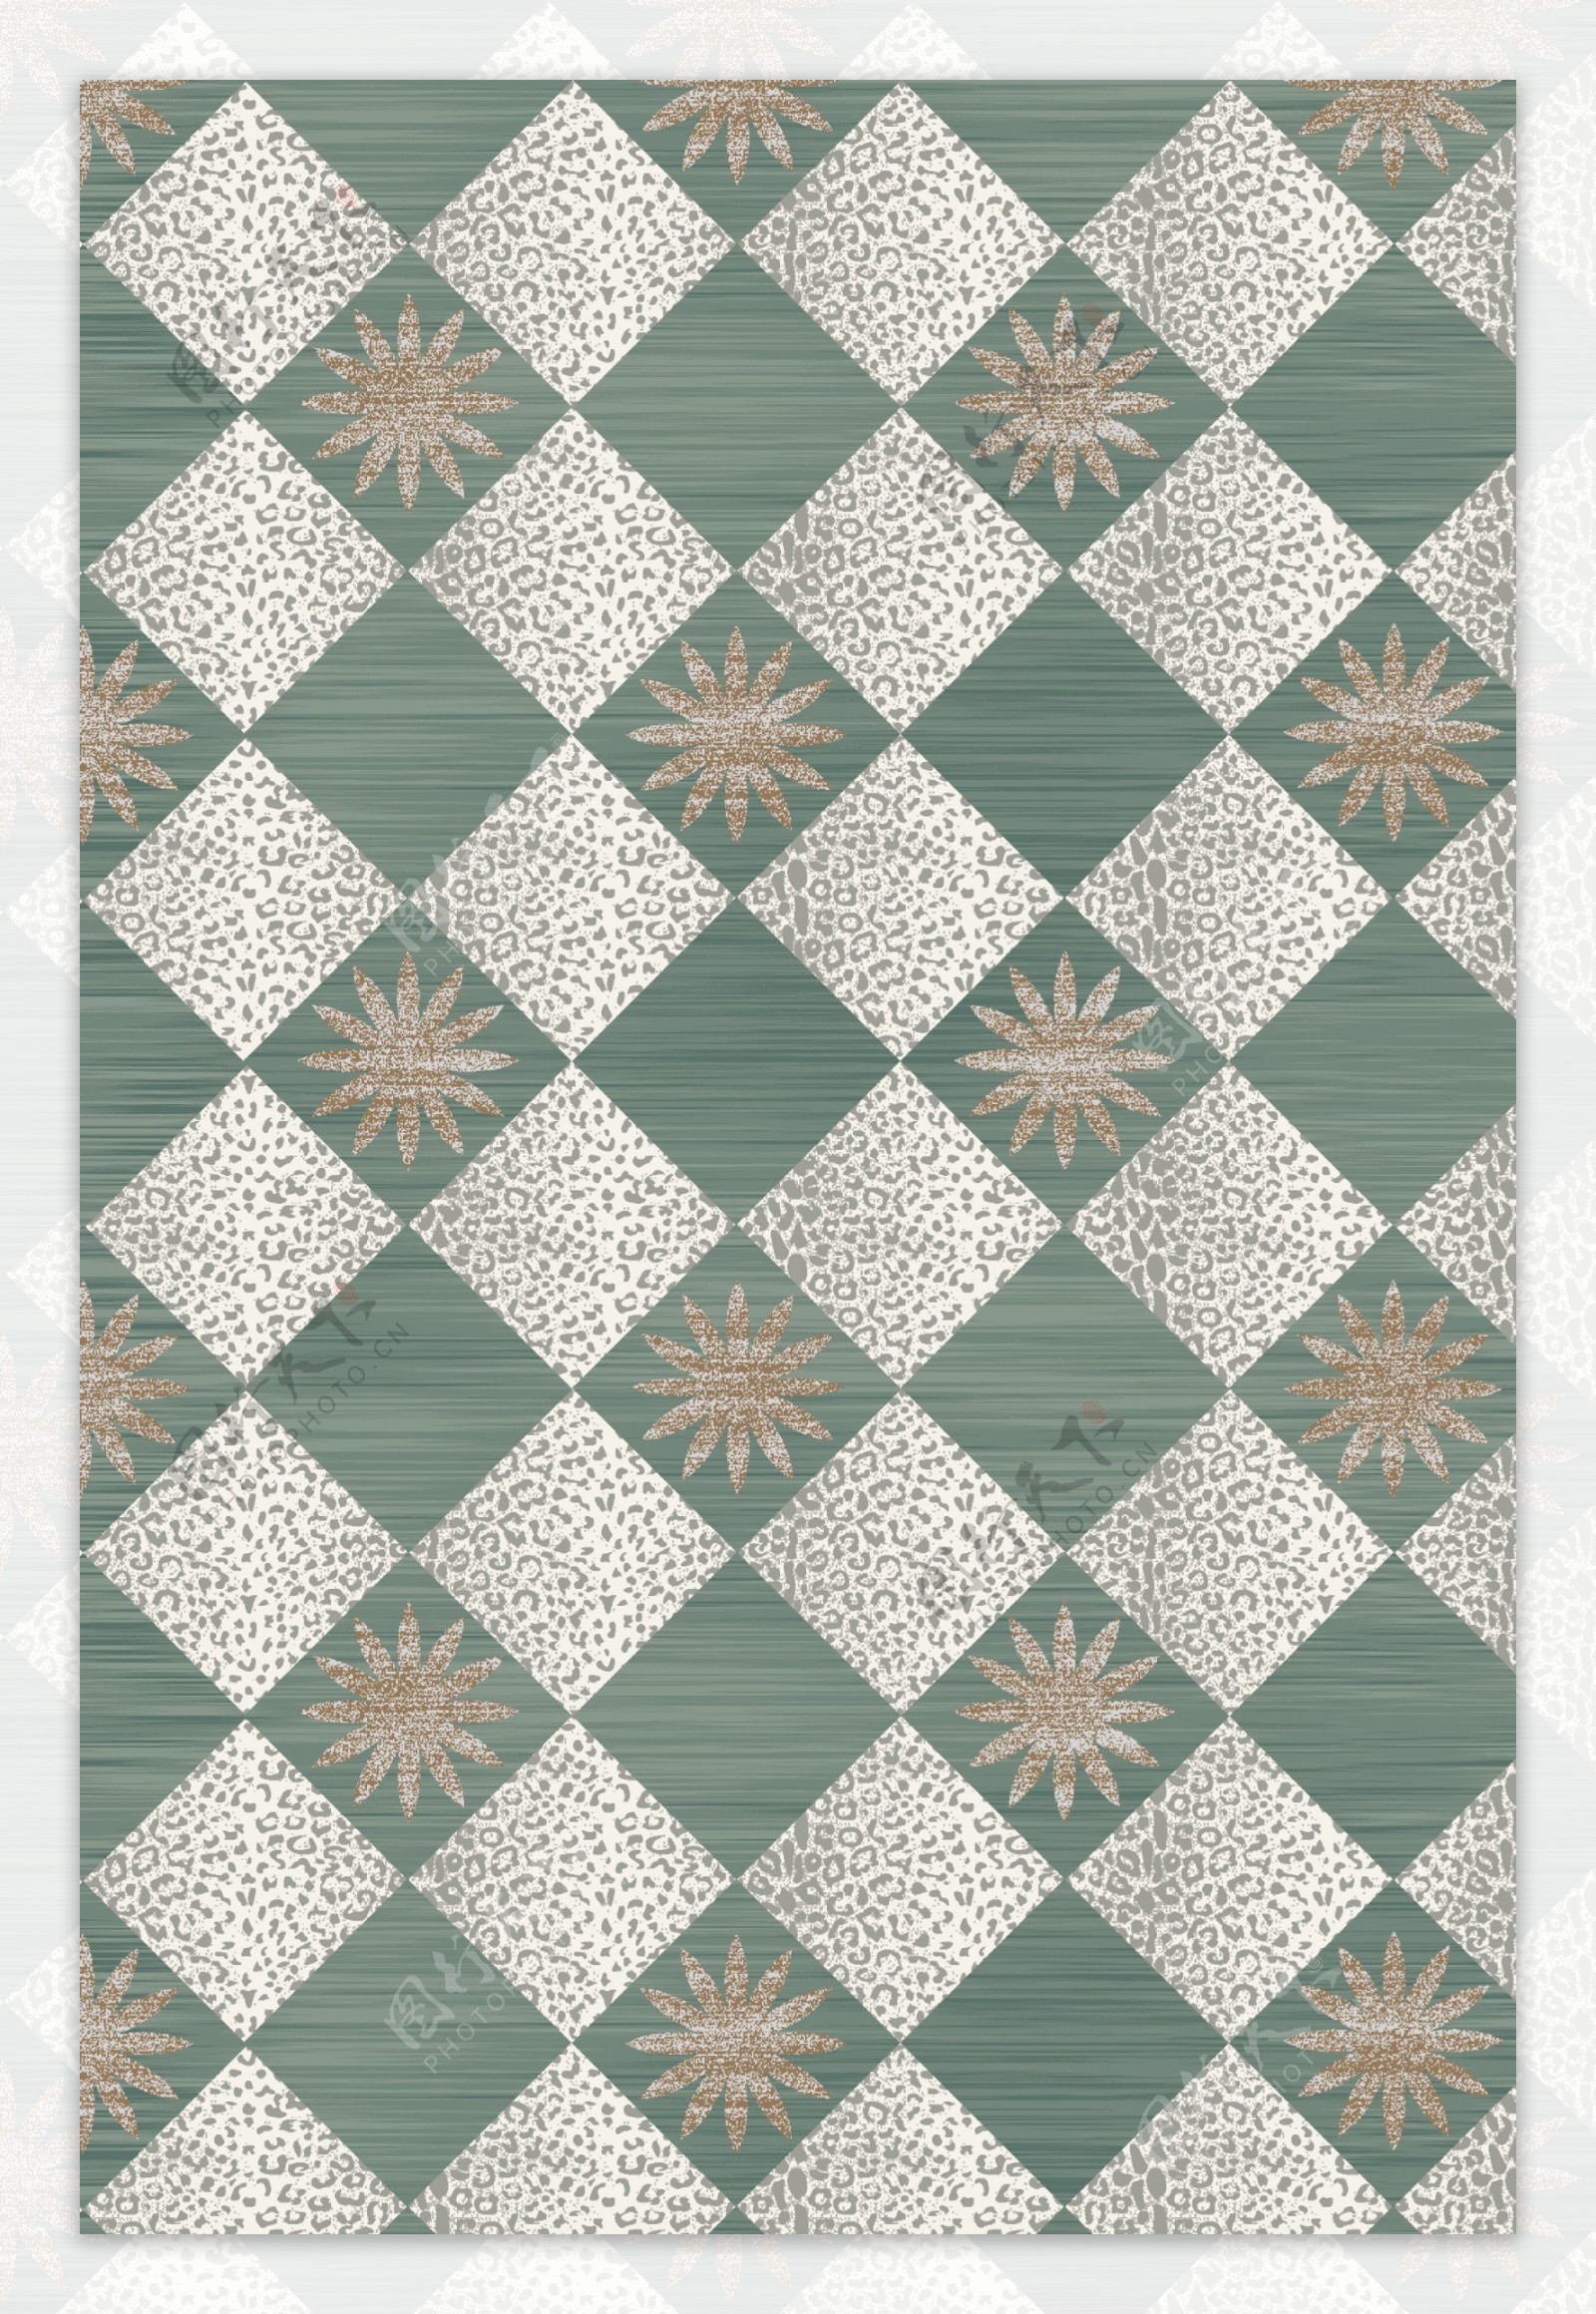 现代简约北欧几何方块花纹地毯地垫图案设计